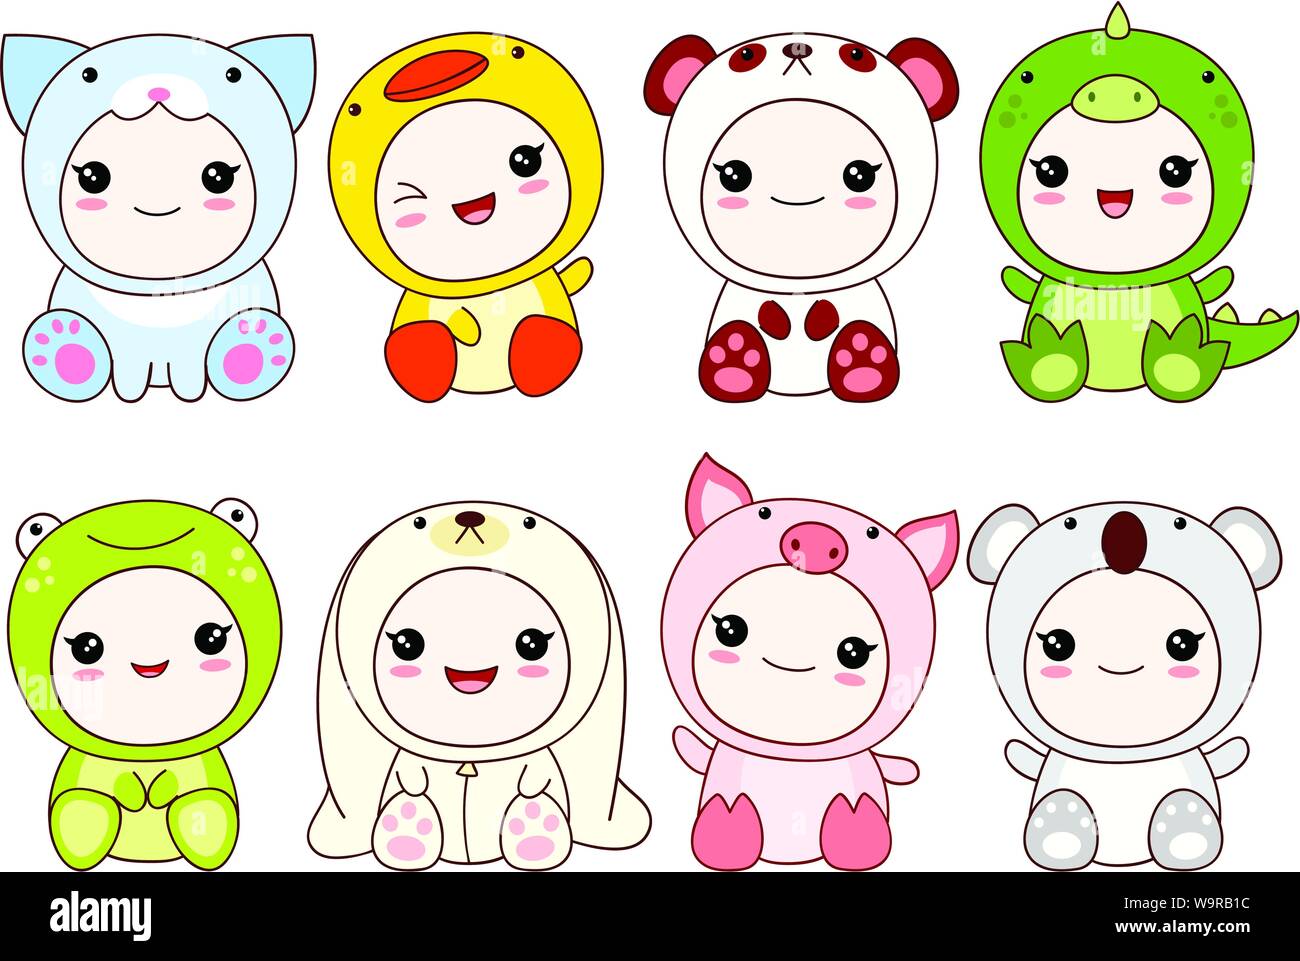 Raccolta di simpatici bambini in costumi diversi di animale - Dragon, panda, coniglio, rana, anatra, maiale, koala, cat. In kawaii style Illustrazione Vettoriale